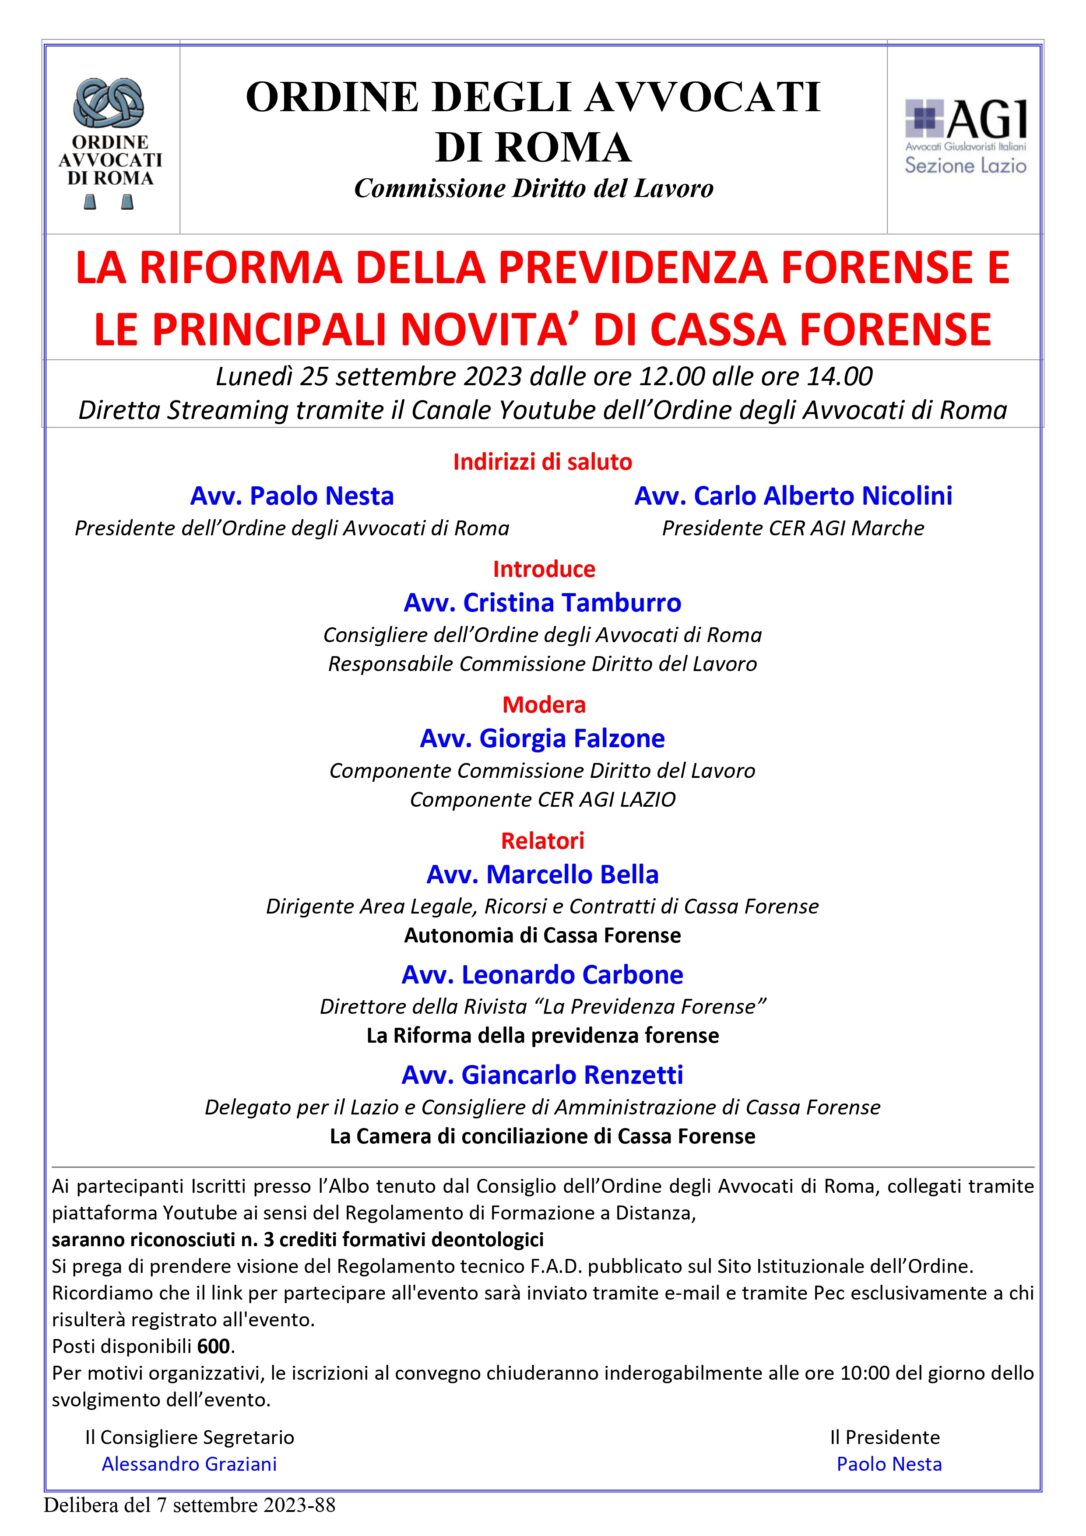 Webinar "La riforma della previdenza forense e le principali novità di Cassa Forense"